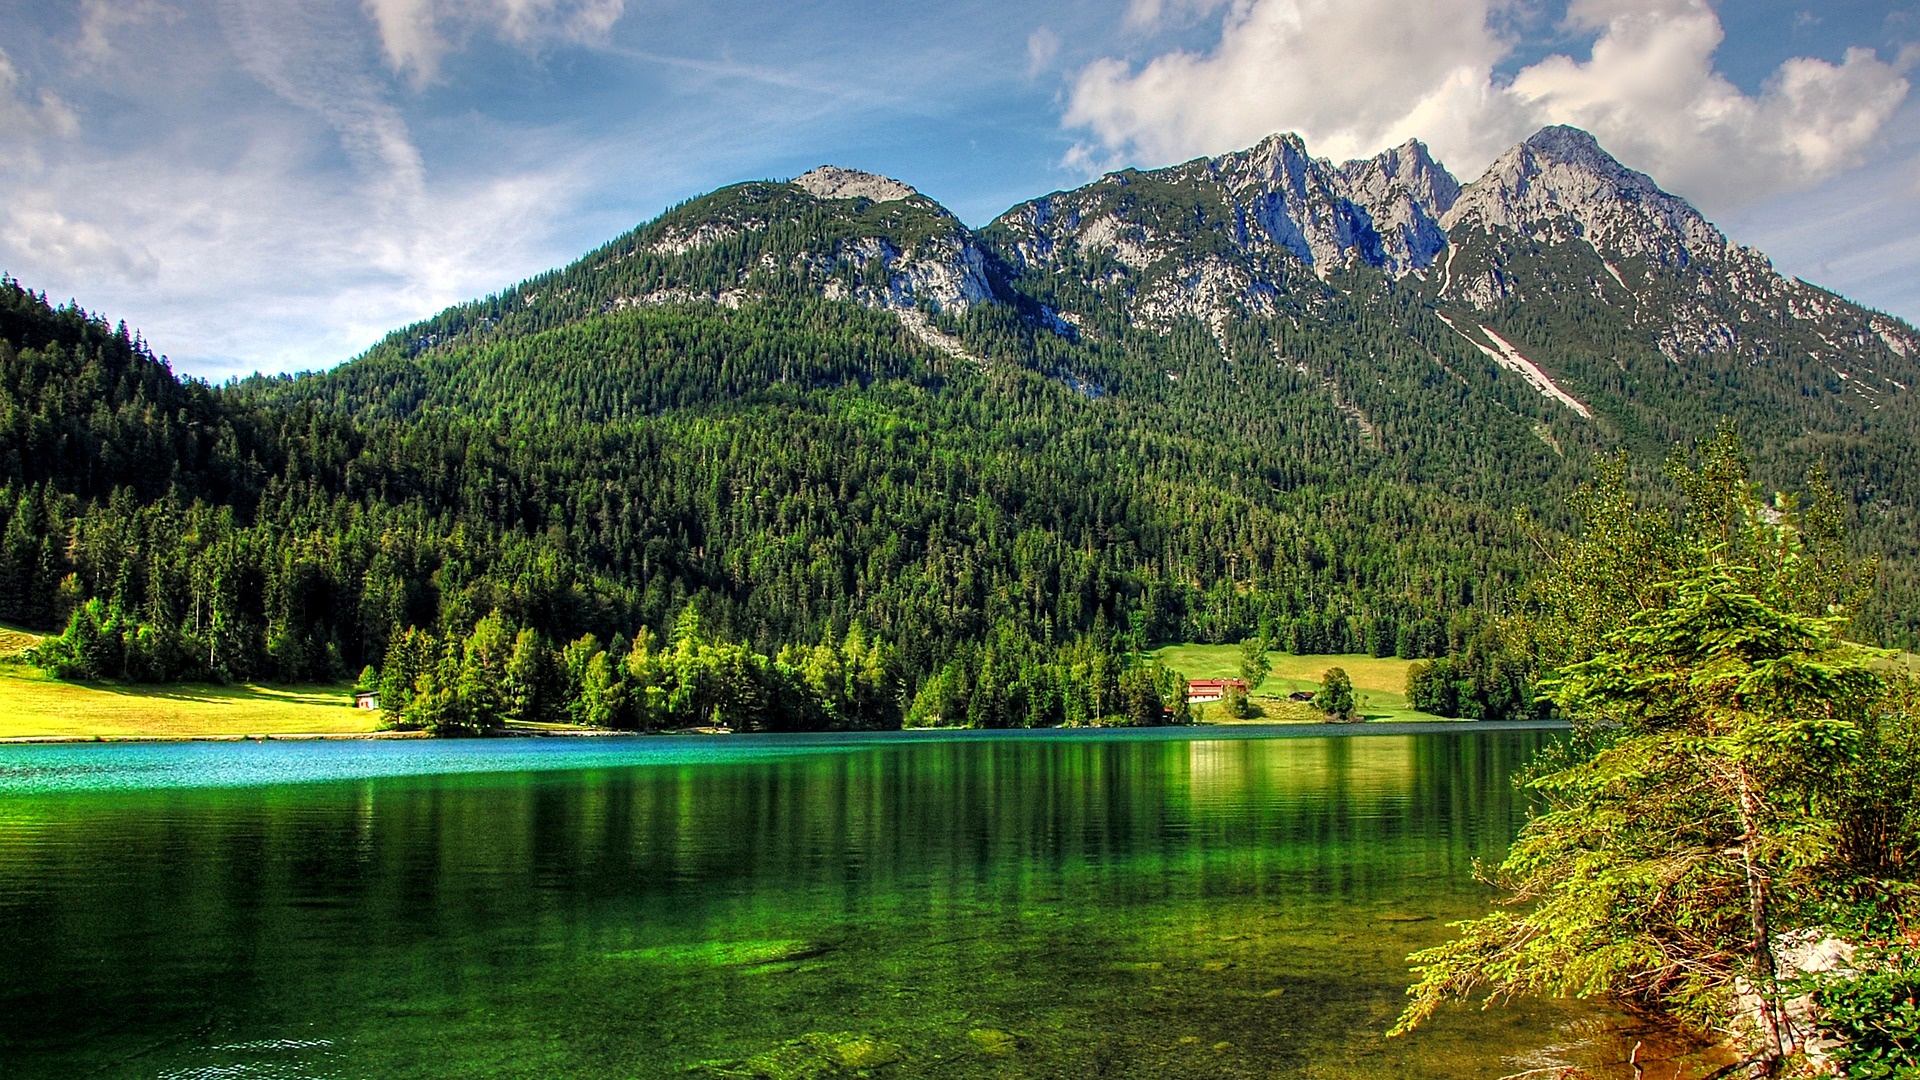 壁紙 19x1080 山 森林 湖泊 奥地利 風景攝影 大自然 下载 照片